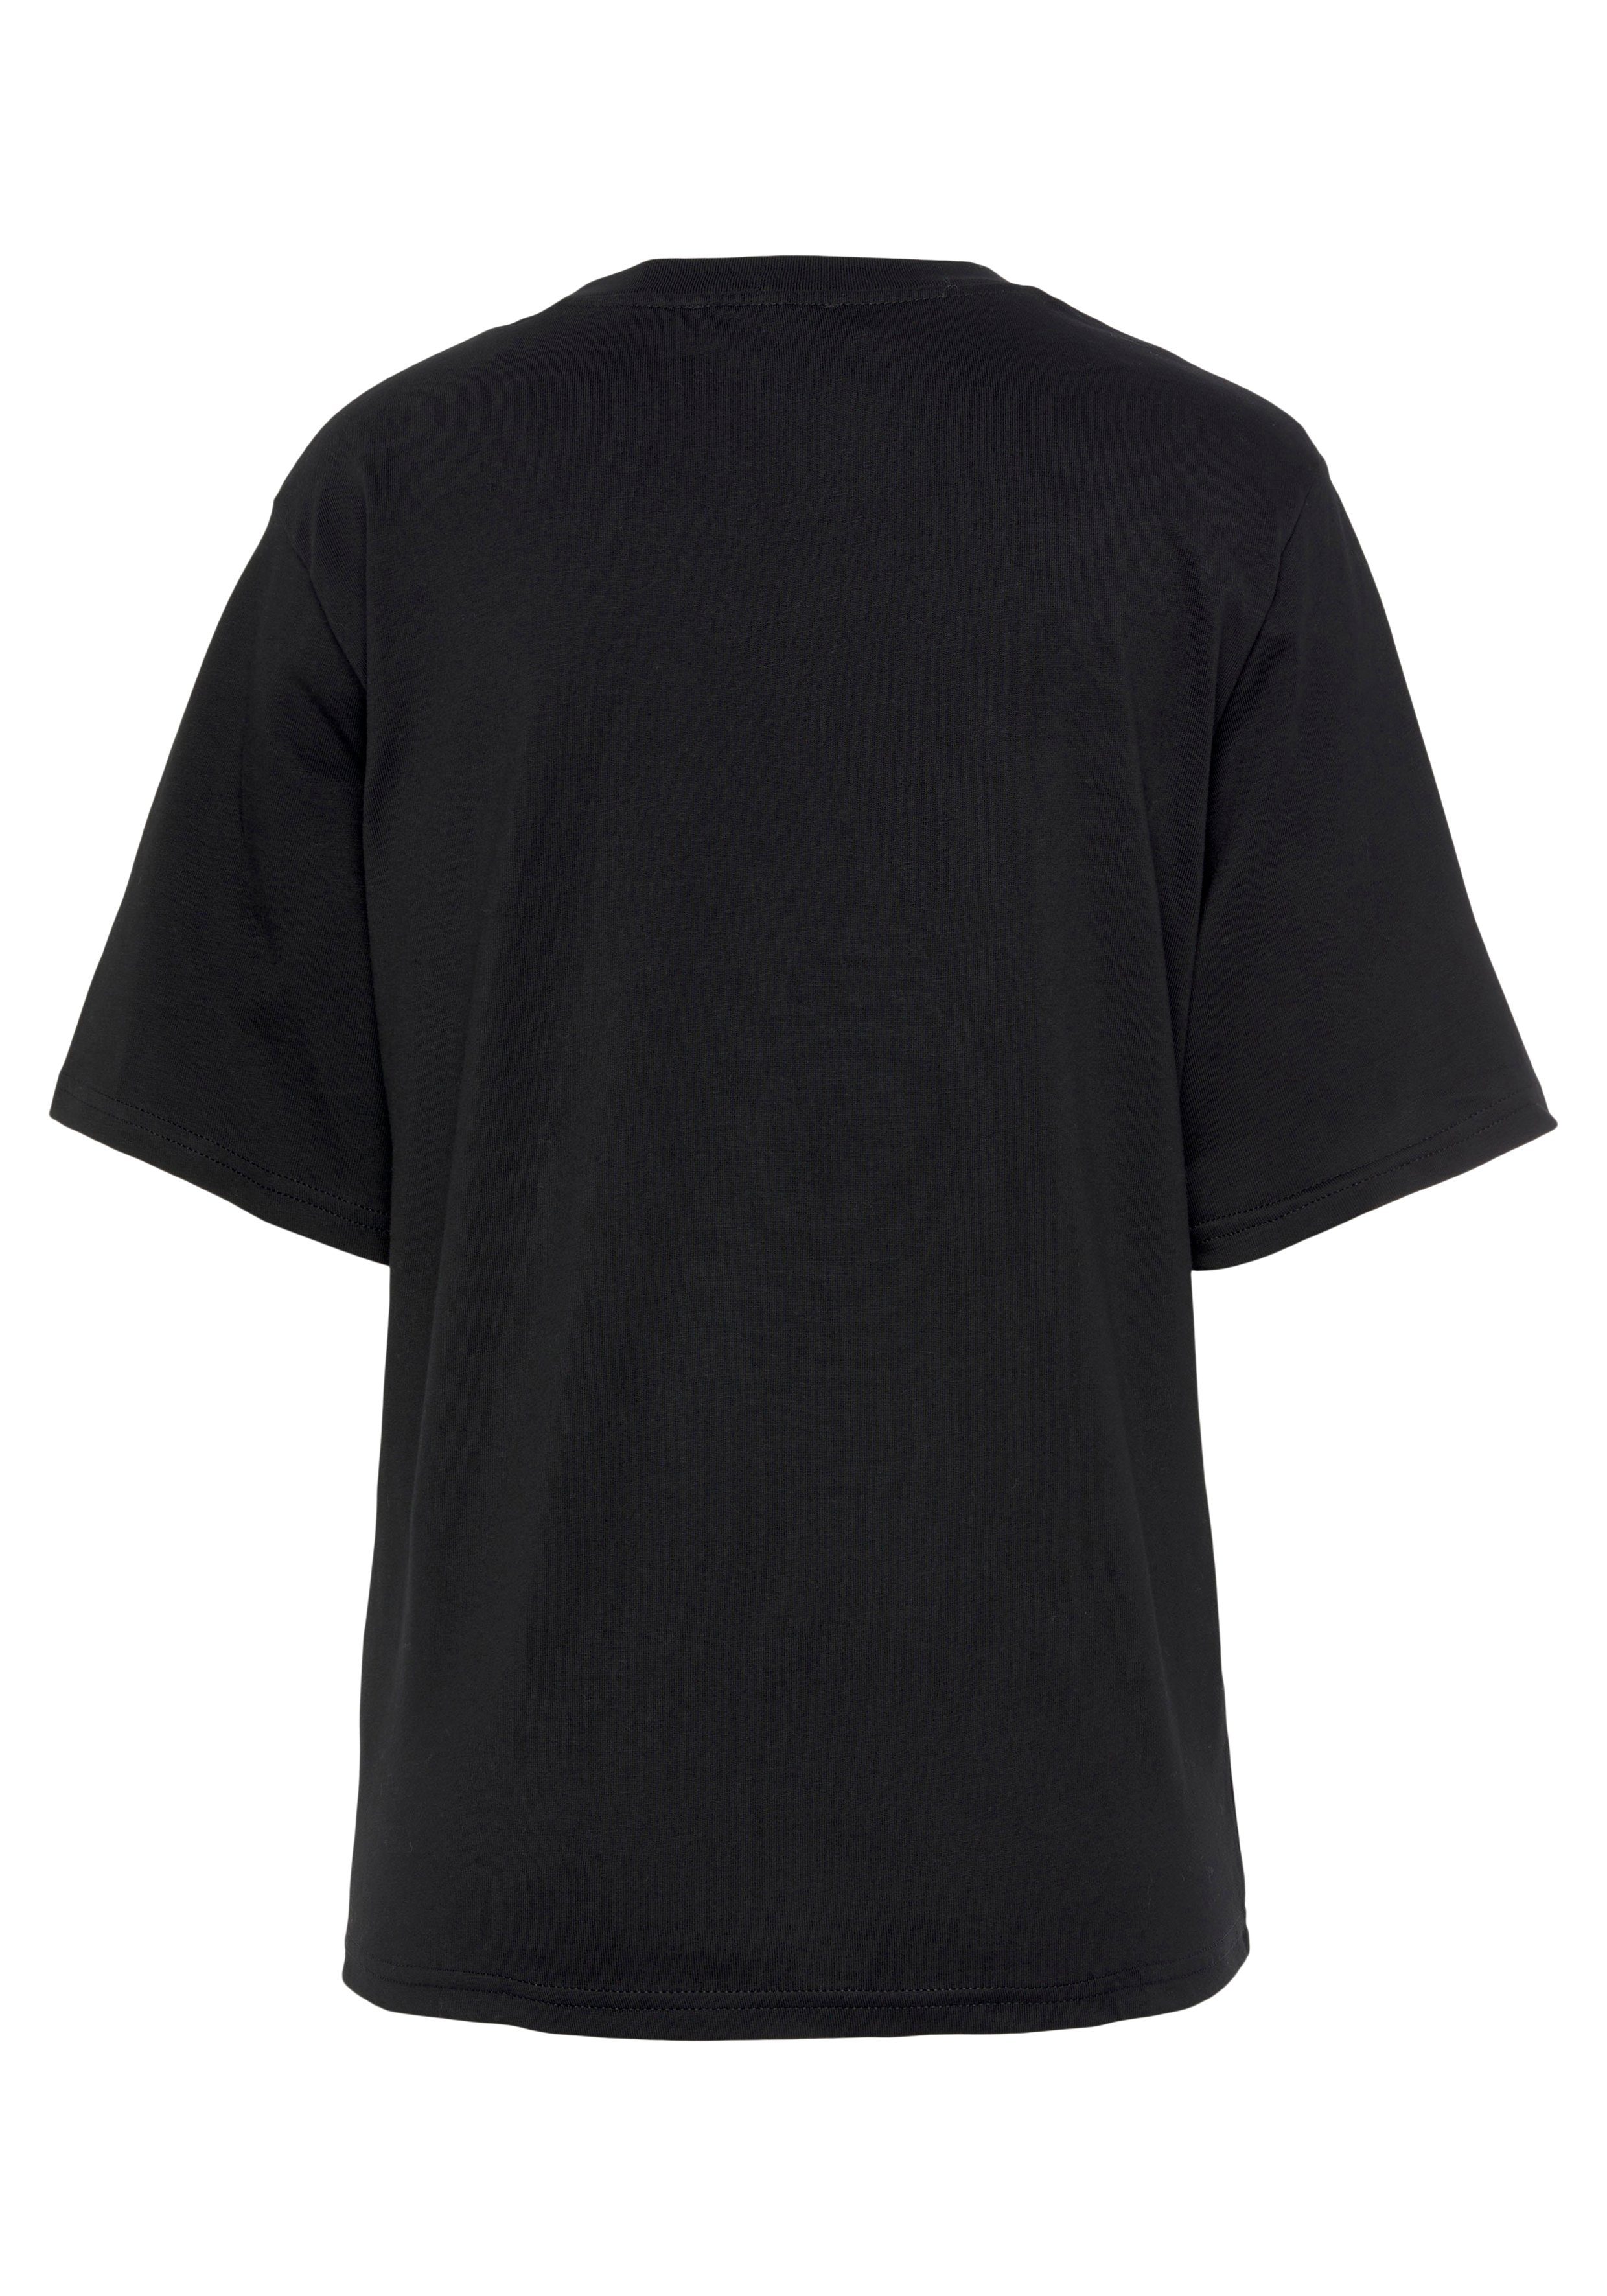 United Colors of Brust der T-Shirt mit Logodruck auf schwarz Benetton